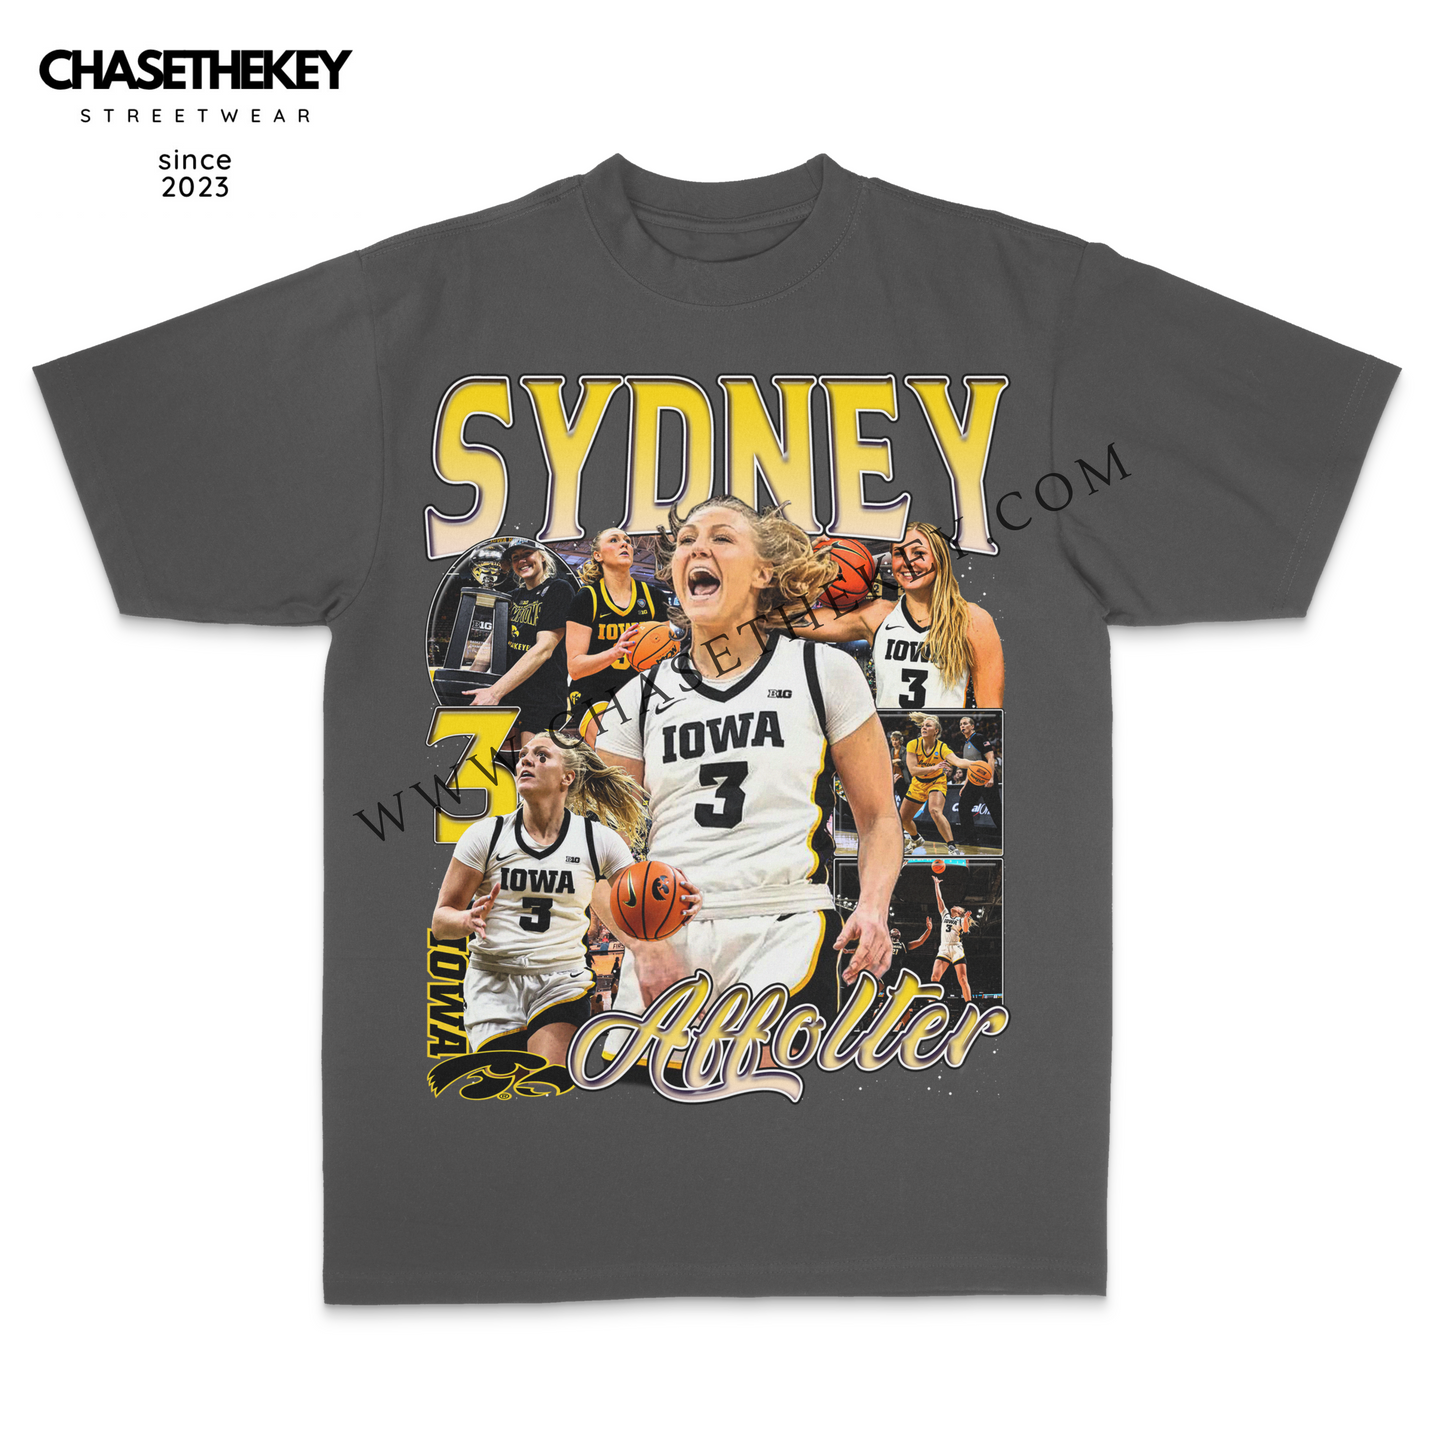 Sydney Affolter Iowa Hawkeyes T-Shirt